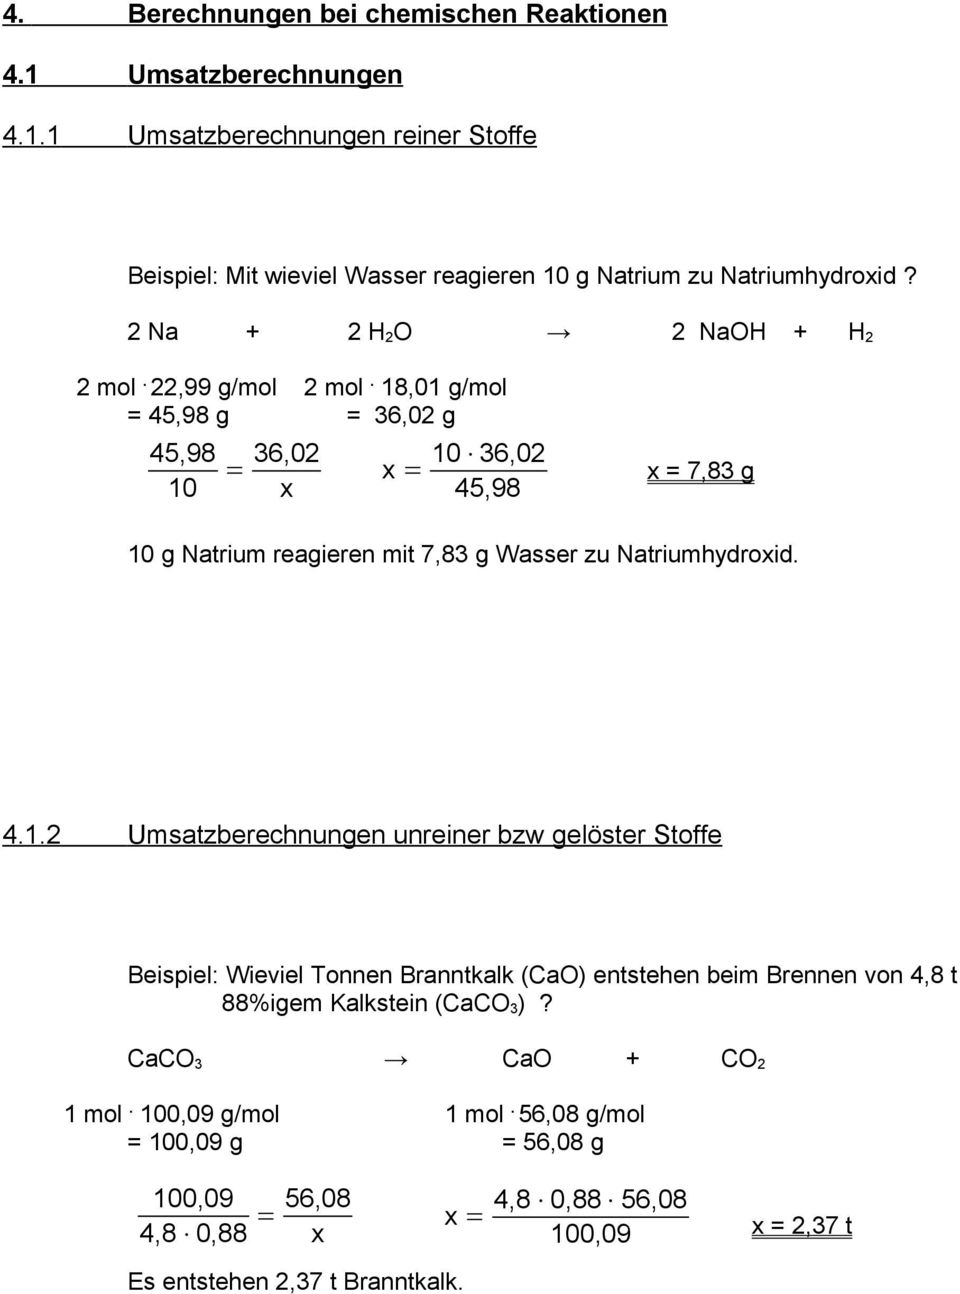 18,01 g/mol = 45,98 g = 36,02 g 45,98 10 = 36,02 = 10 36,02 45,98 = 7,83 g 10 g Natrium reagieren mit 7,83 g Wasser zu Natriumhydroid. 4.1.2 Umsatzberechnungen unreiner bzw gelöster Stoffe Beispiel: Wieviel Tonnen Branntkalk (CaO) entstehen beim Brennen von 4,8 t 88%igem Kalkstein (CaCO 3 )?